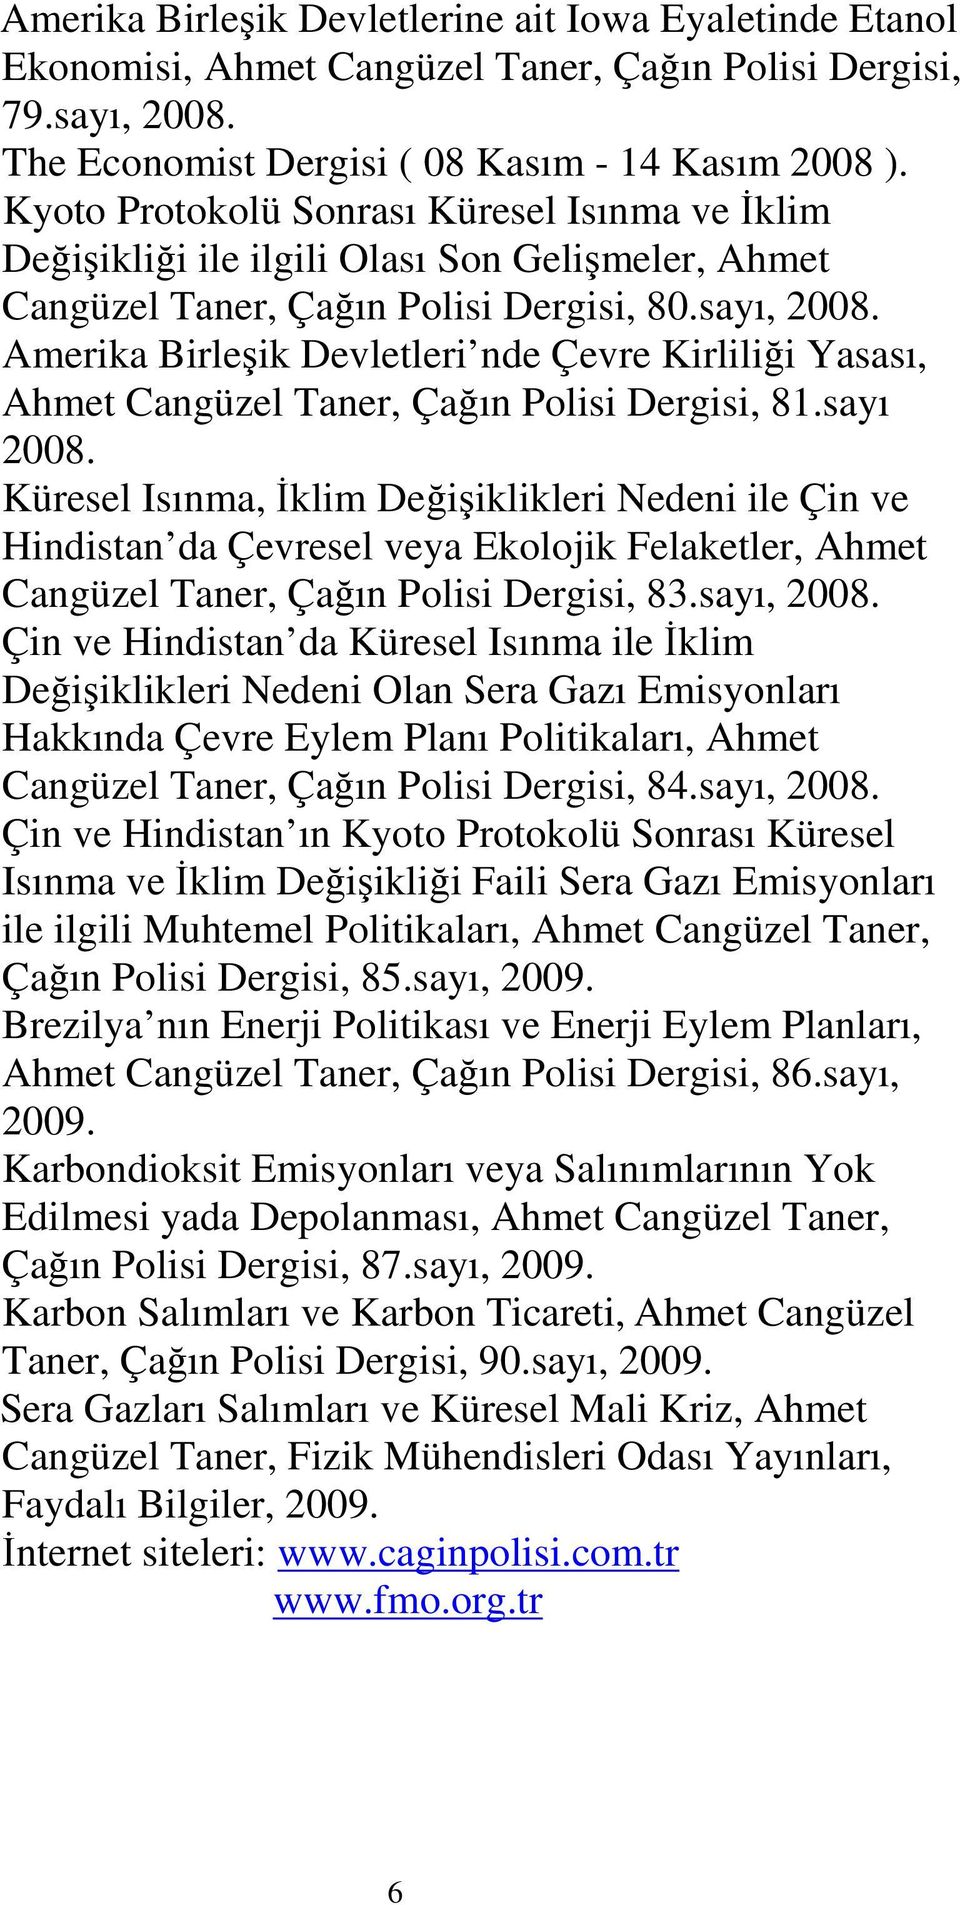 Amerika Birleşik Devletleri nde Çevre Kirliliği Yasası, Ahmet Cangüzel Taner, Çağın Polisi Dergisi, 81.sayı 2008.